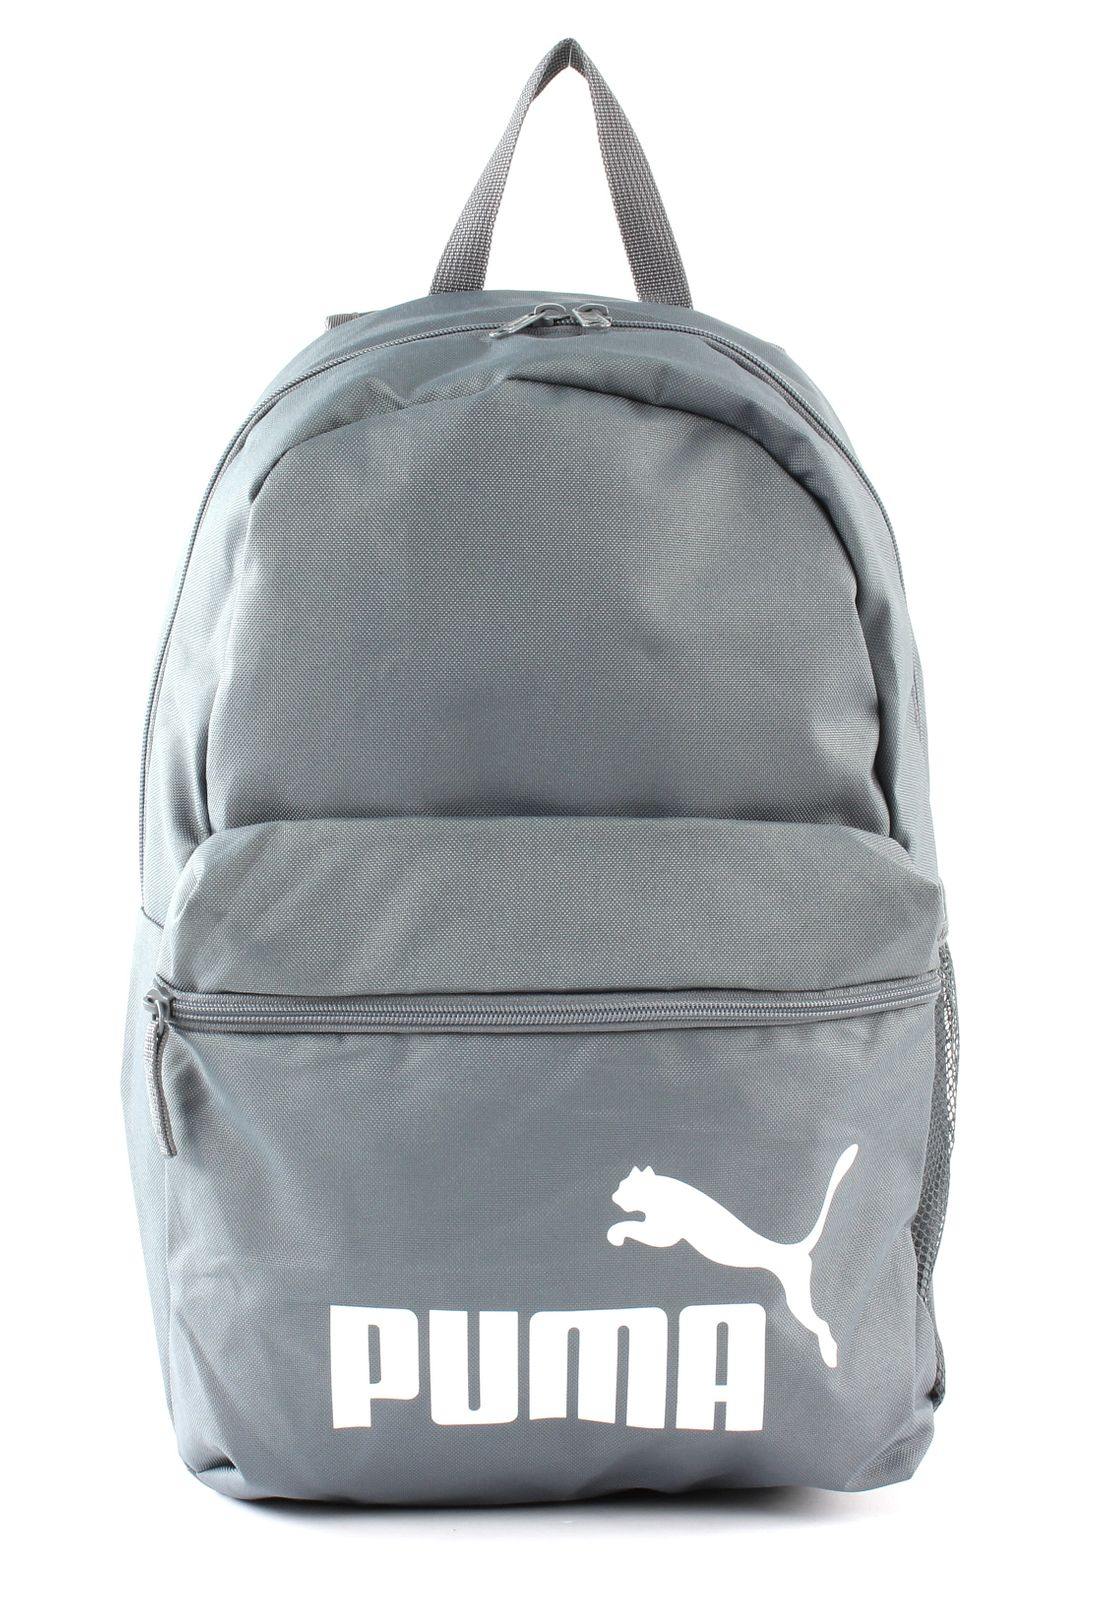 Puma Phase Backpack - Sport Duwe Saulheim